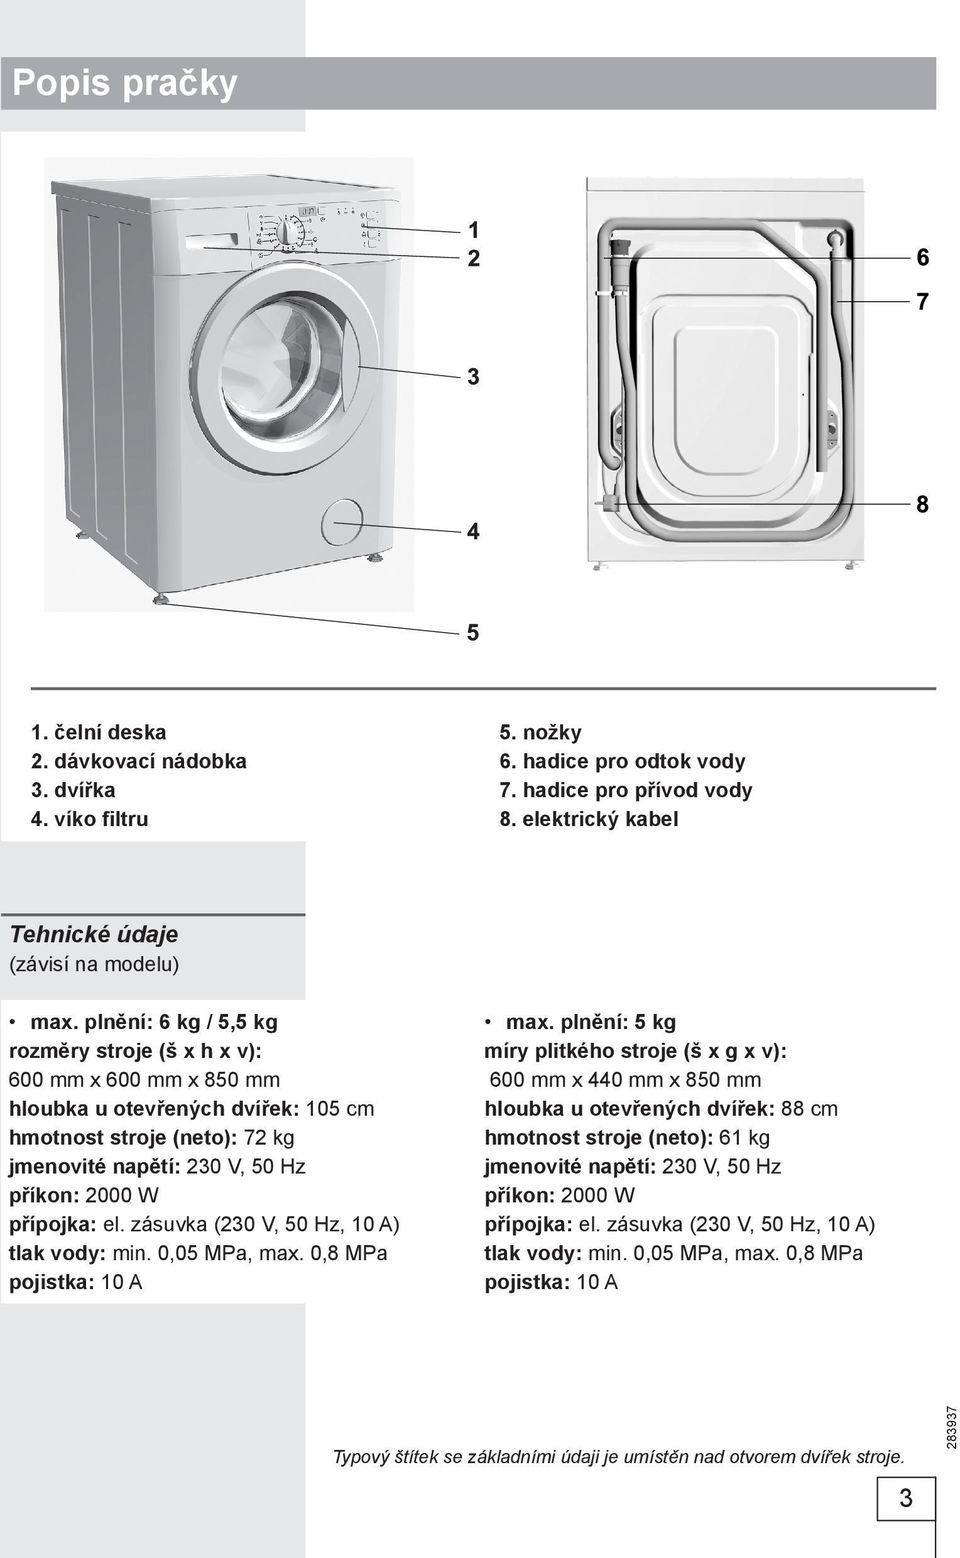 zásuvka (230 V, 50 Hz, 10 A) tlak vody: min. 0,05 MPa, max. 0,8 MPa pojistka: 10 A max.